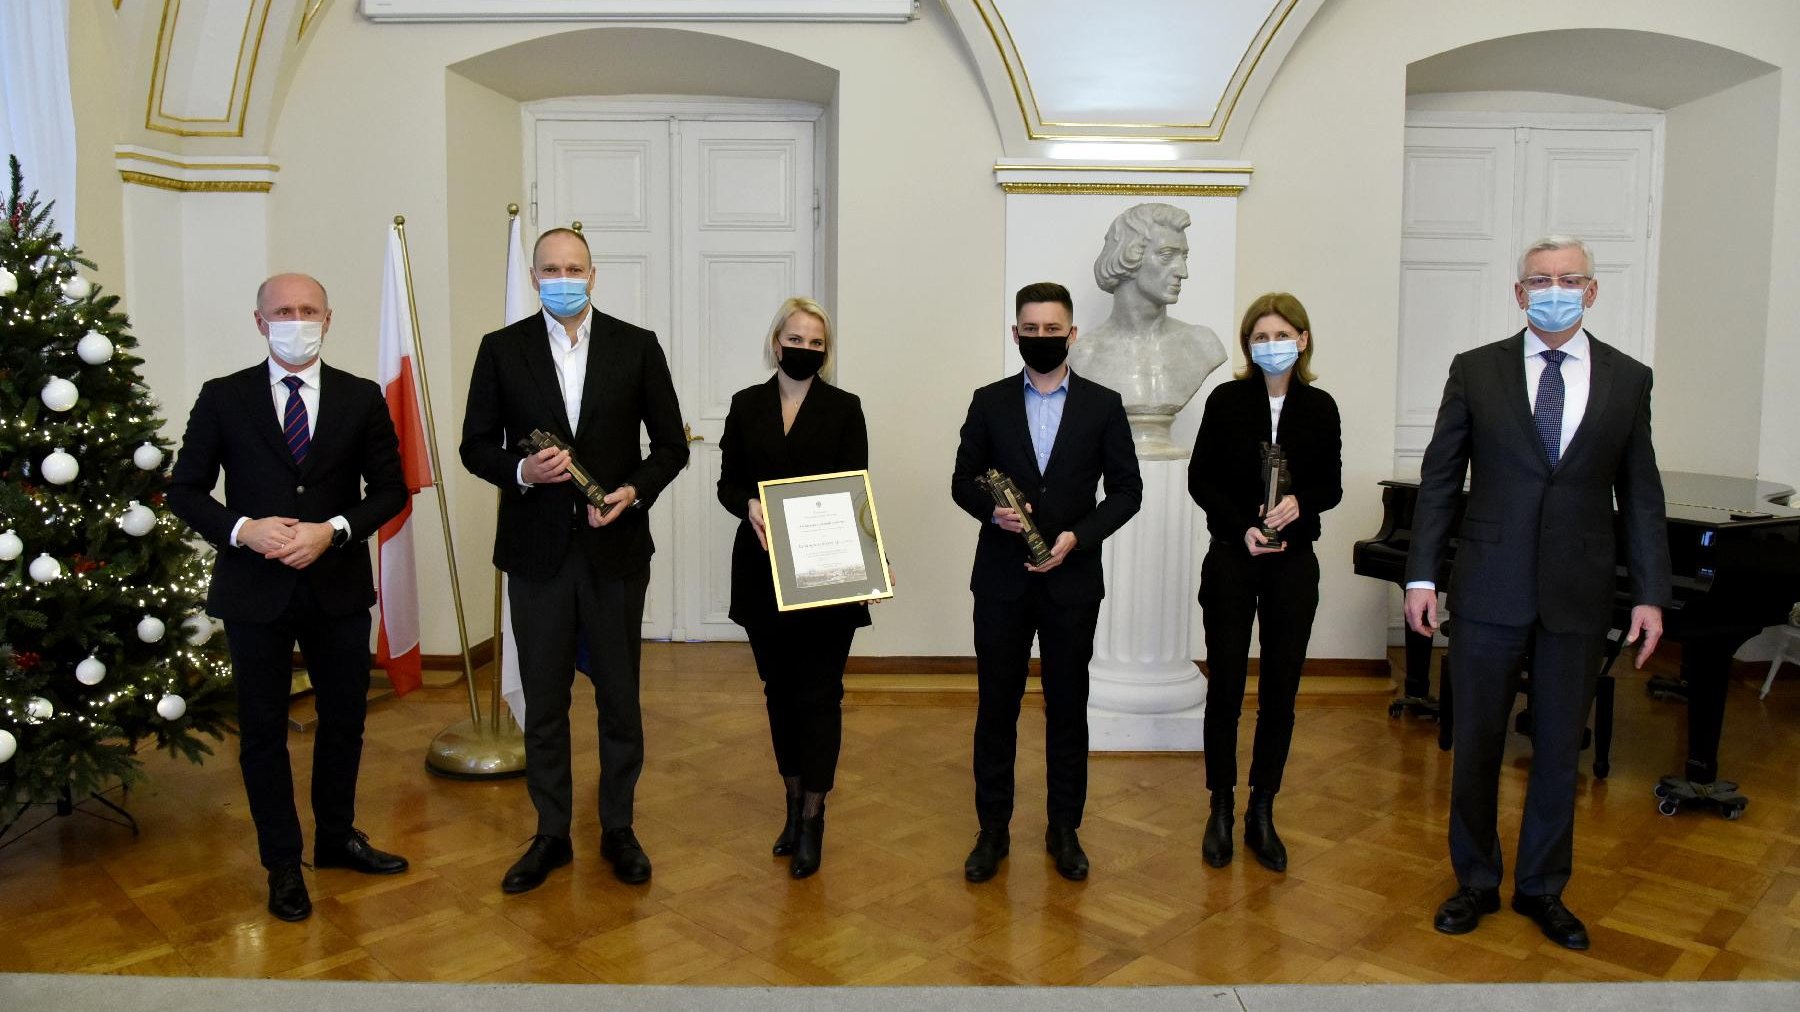 Laureaci trzeciej odsłony konkursu Architectus civitatis nostrae. W dloniach trzymają dyplomy i statuetki.